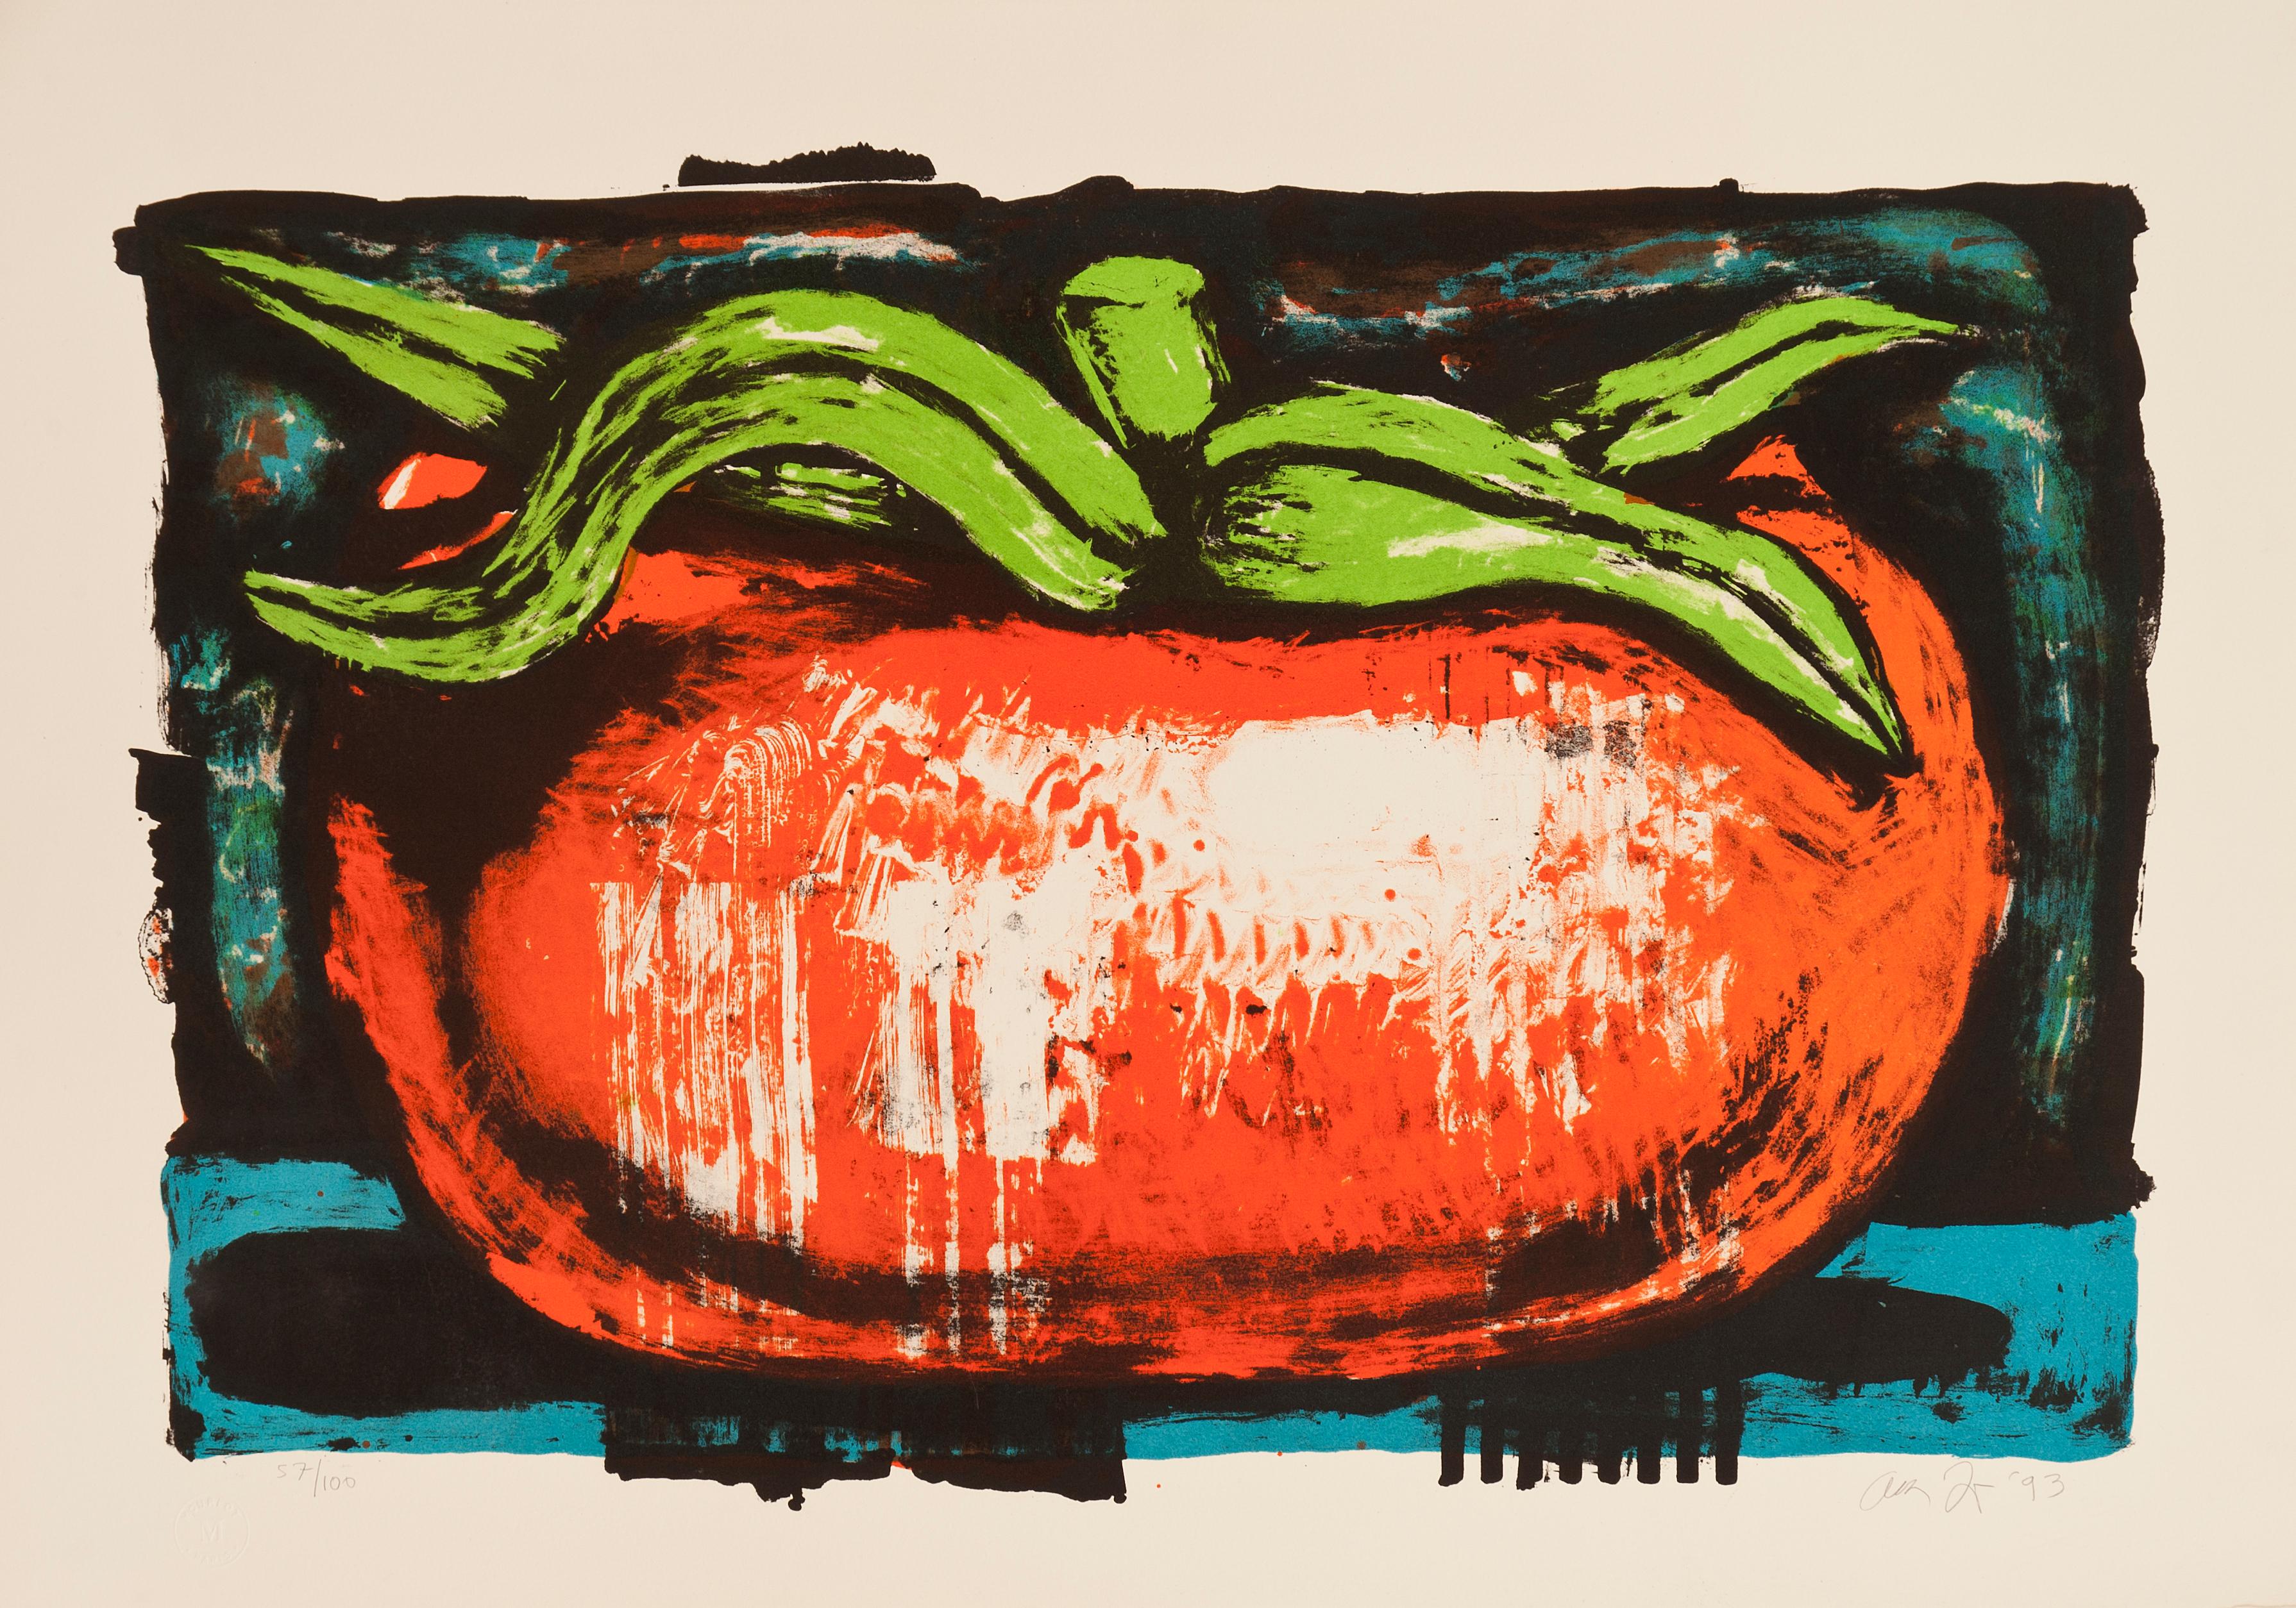 Dieses Original-Stillleben mit einer Tomate wurde 1993 in Zusammenarbeit mit Eric Mourlot in einer Auflage von 100 Stück gedruckt. 

Künstler Bio:
Geboren in Boston, MA, erhielt Fink seine Ausbildung am Maryland Institute College of Art und an der